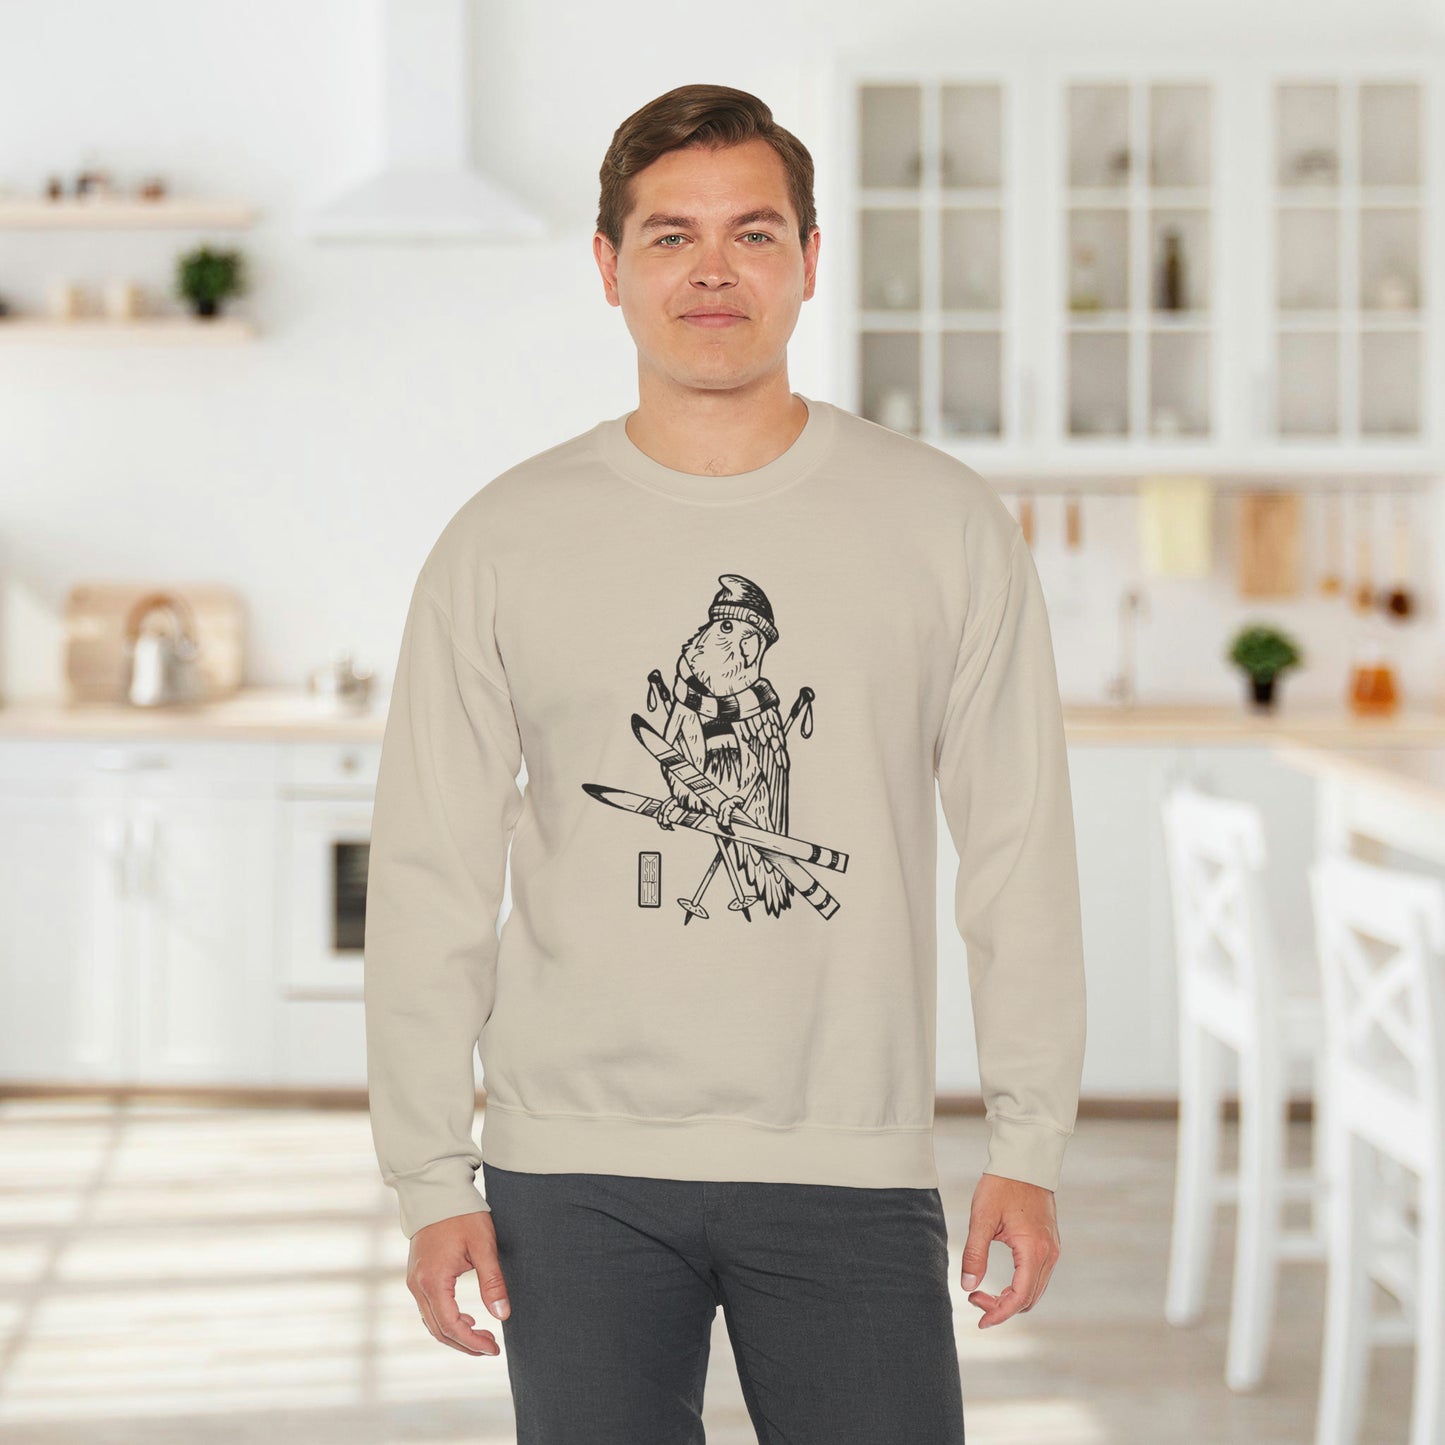 Lovebird Goes Skiing, Line Art Crew Neck Sweatshirt